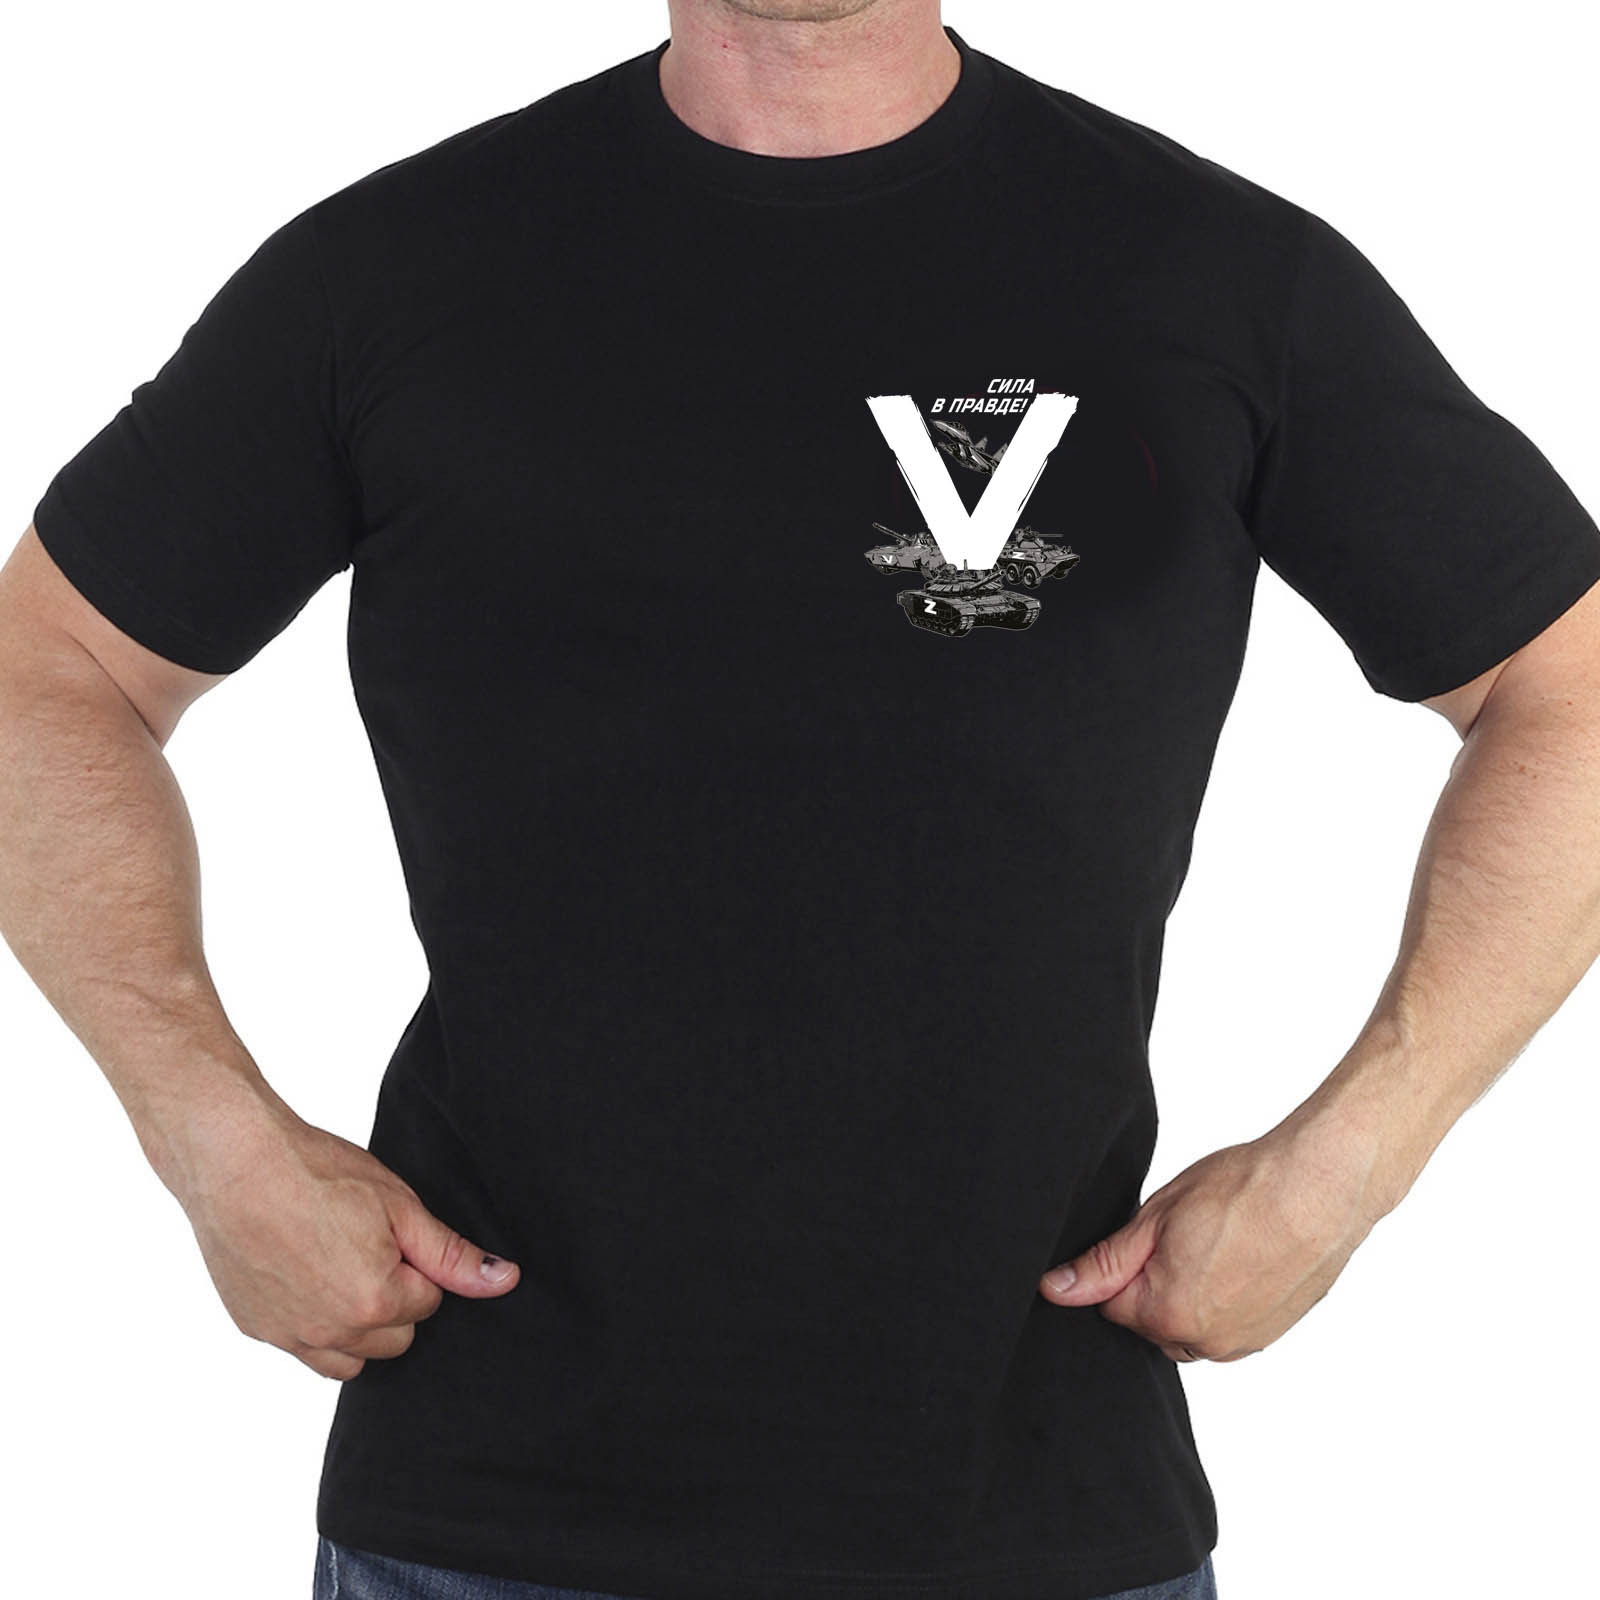 Купить футболку с буквой V